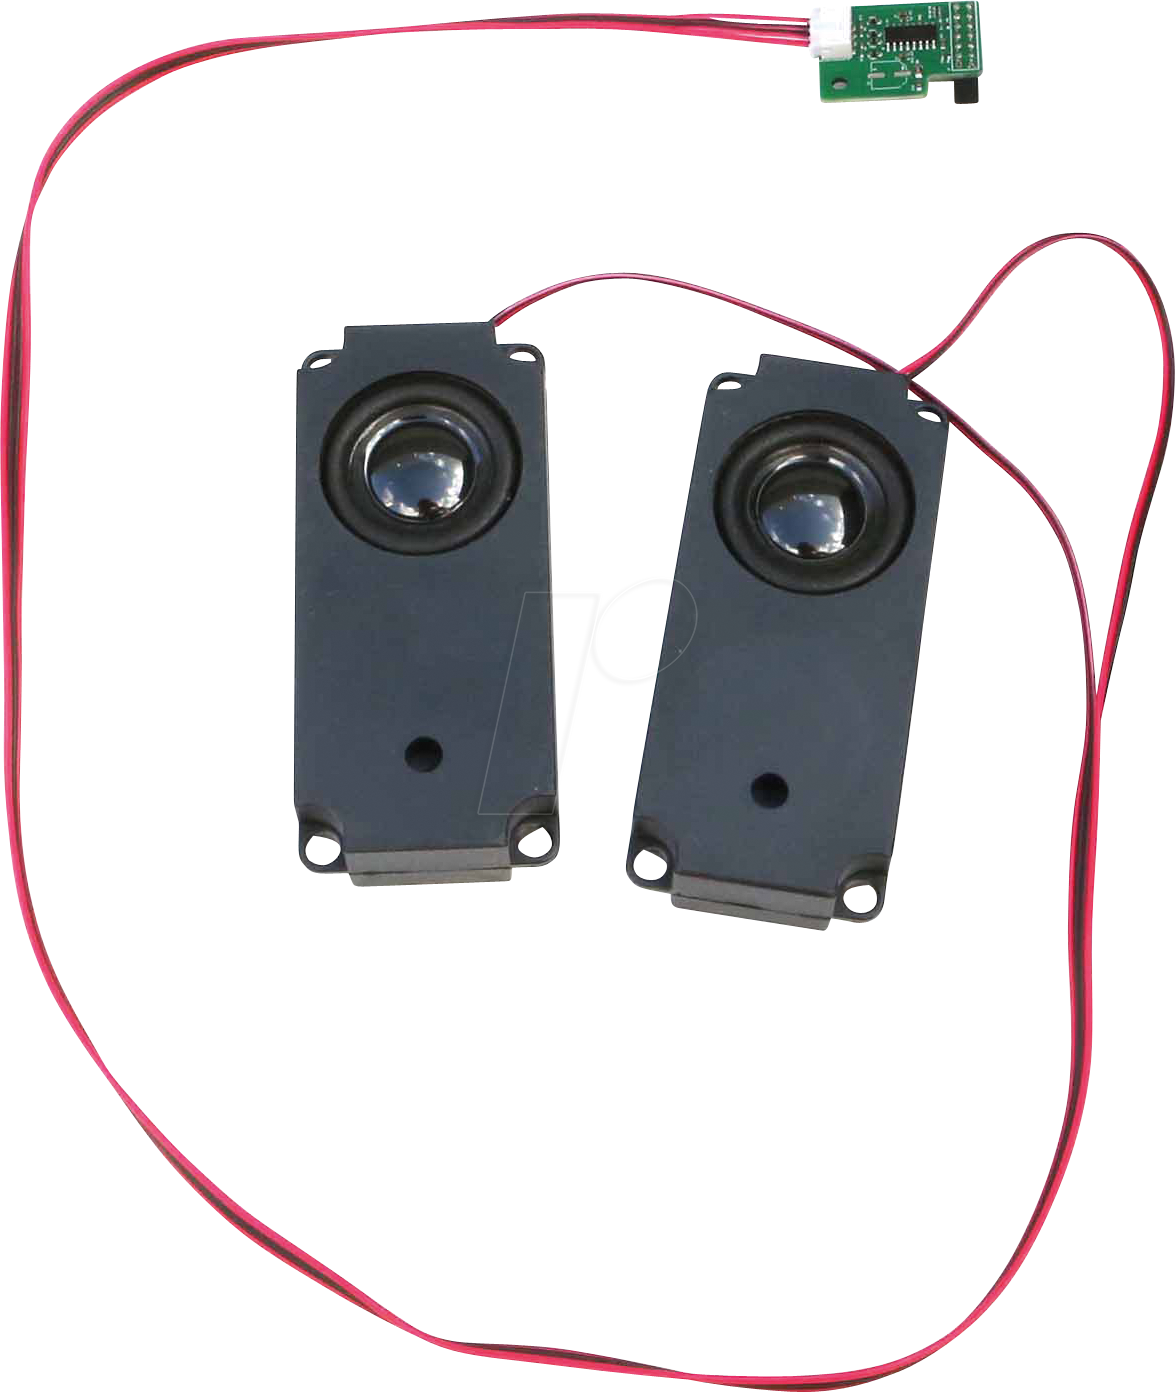 ODRO M1S SP-KIT - Odroid - Speaker Kit für den M1S, 5W von ODROID